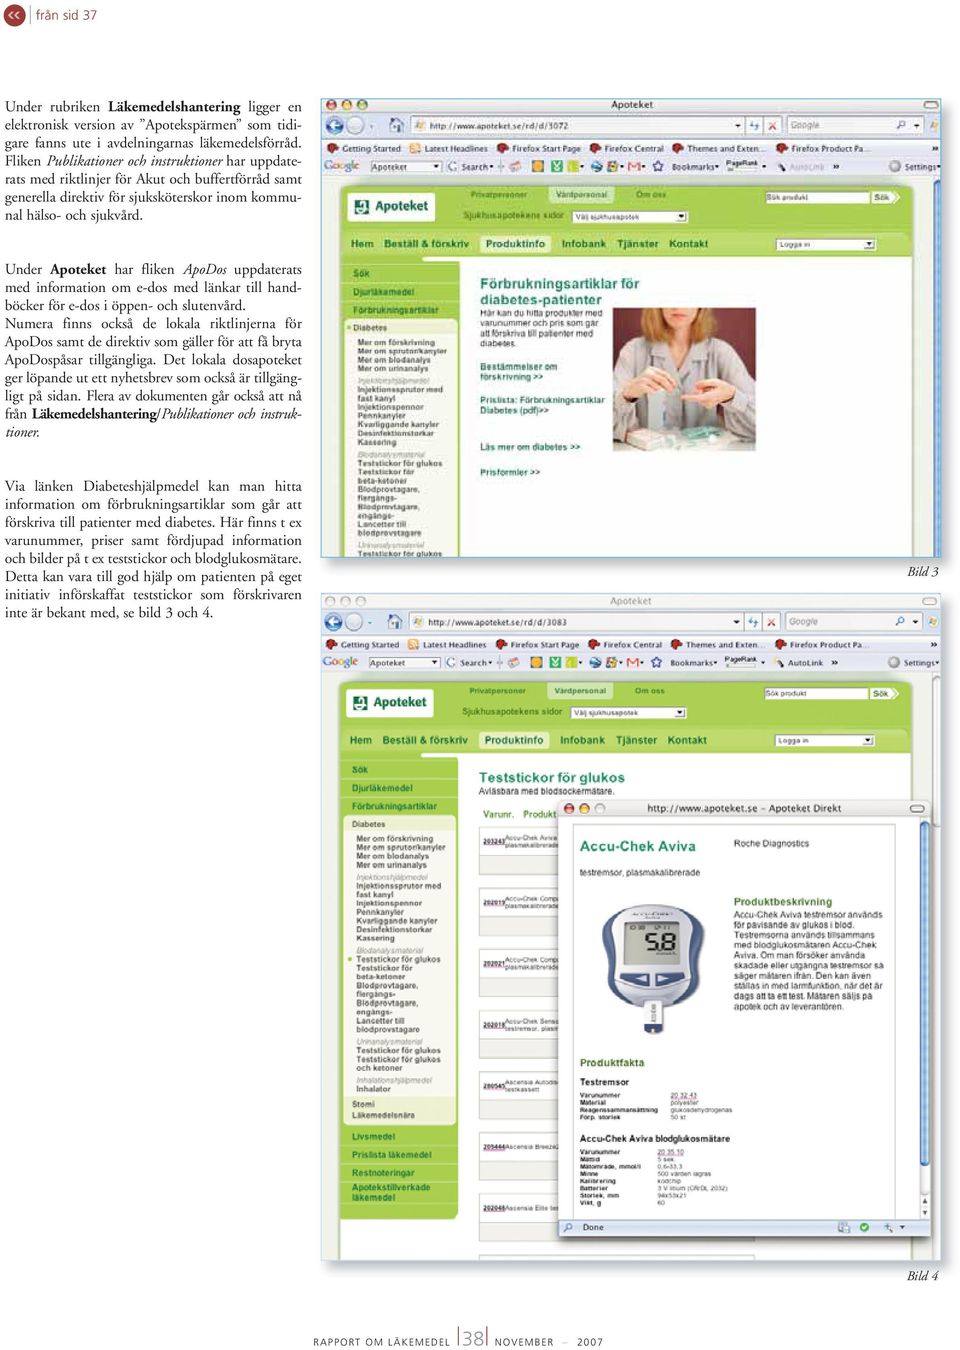 Under Apoteket har fliken ApoDos uppdaterats med information om e-dos med länkar till handböcker för e-dos i öppen- och slutenvård.